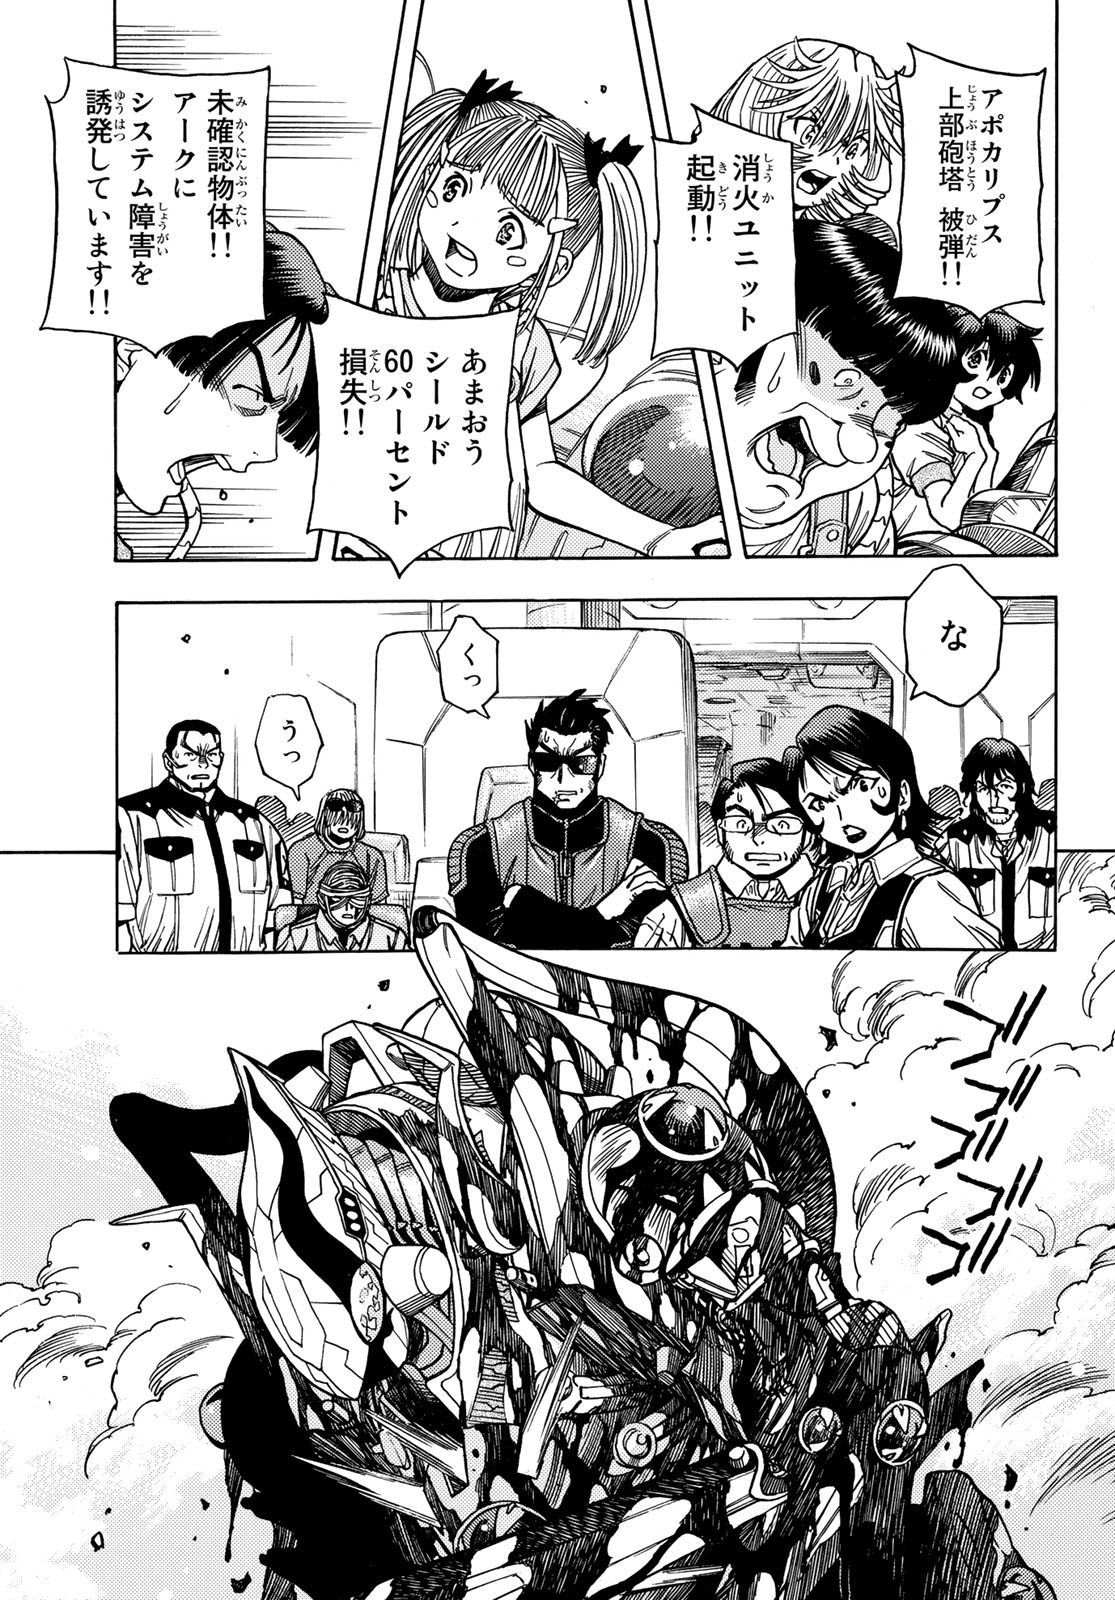 Mugou no Schnell Gear: Chikyuugai Kisouka AI - Chapter 46 - Page 9